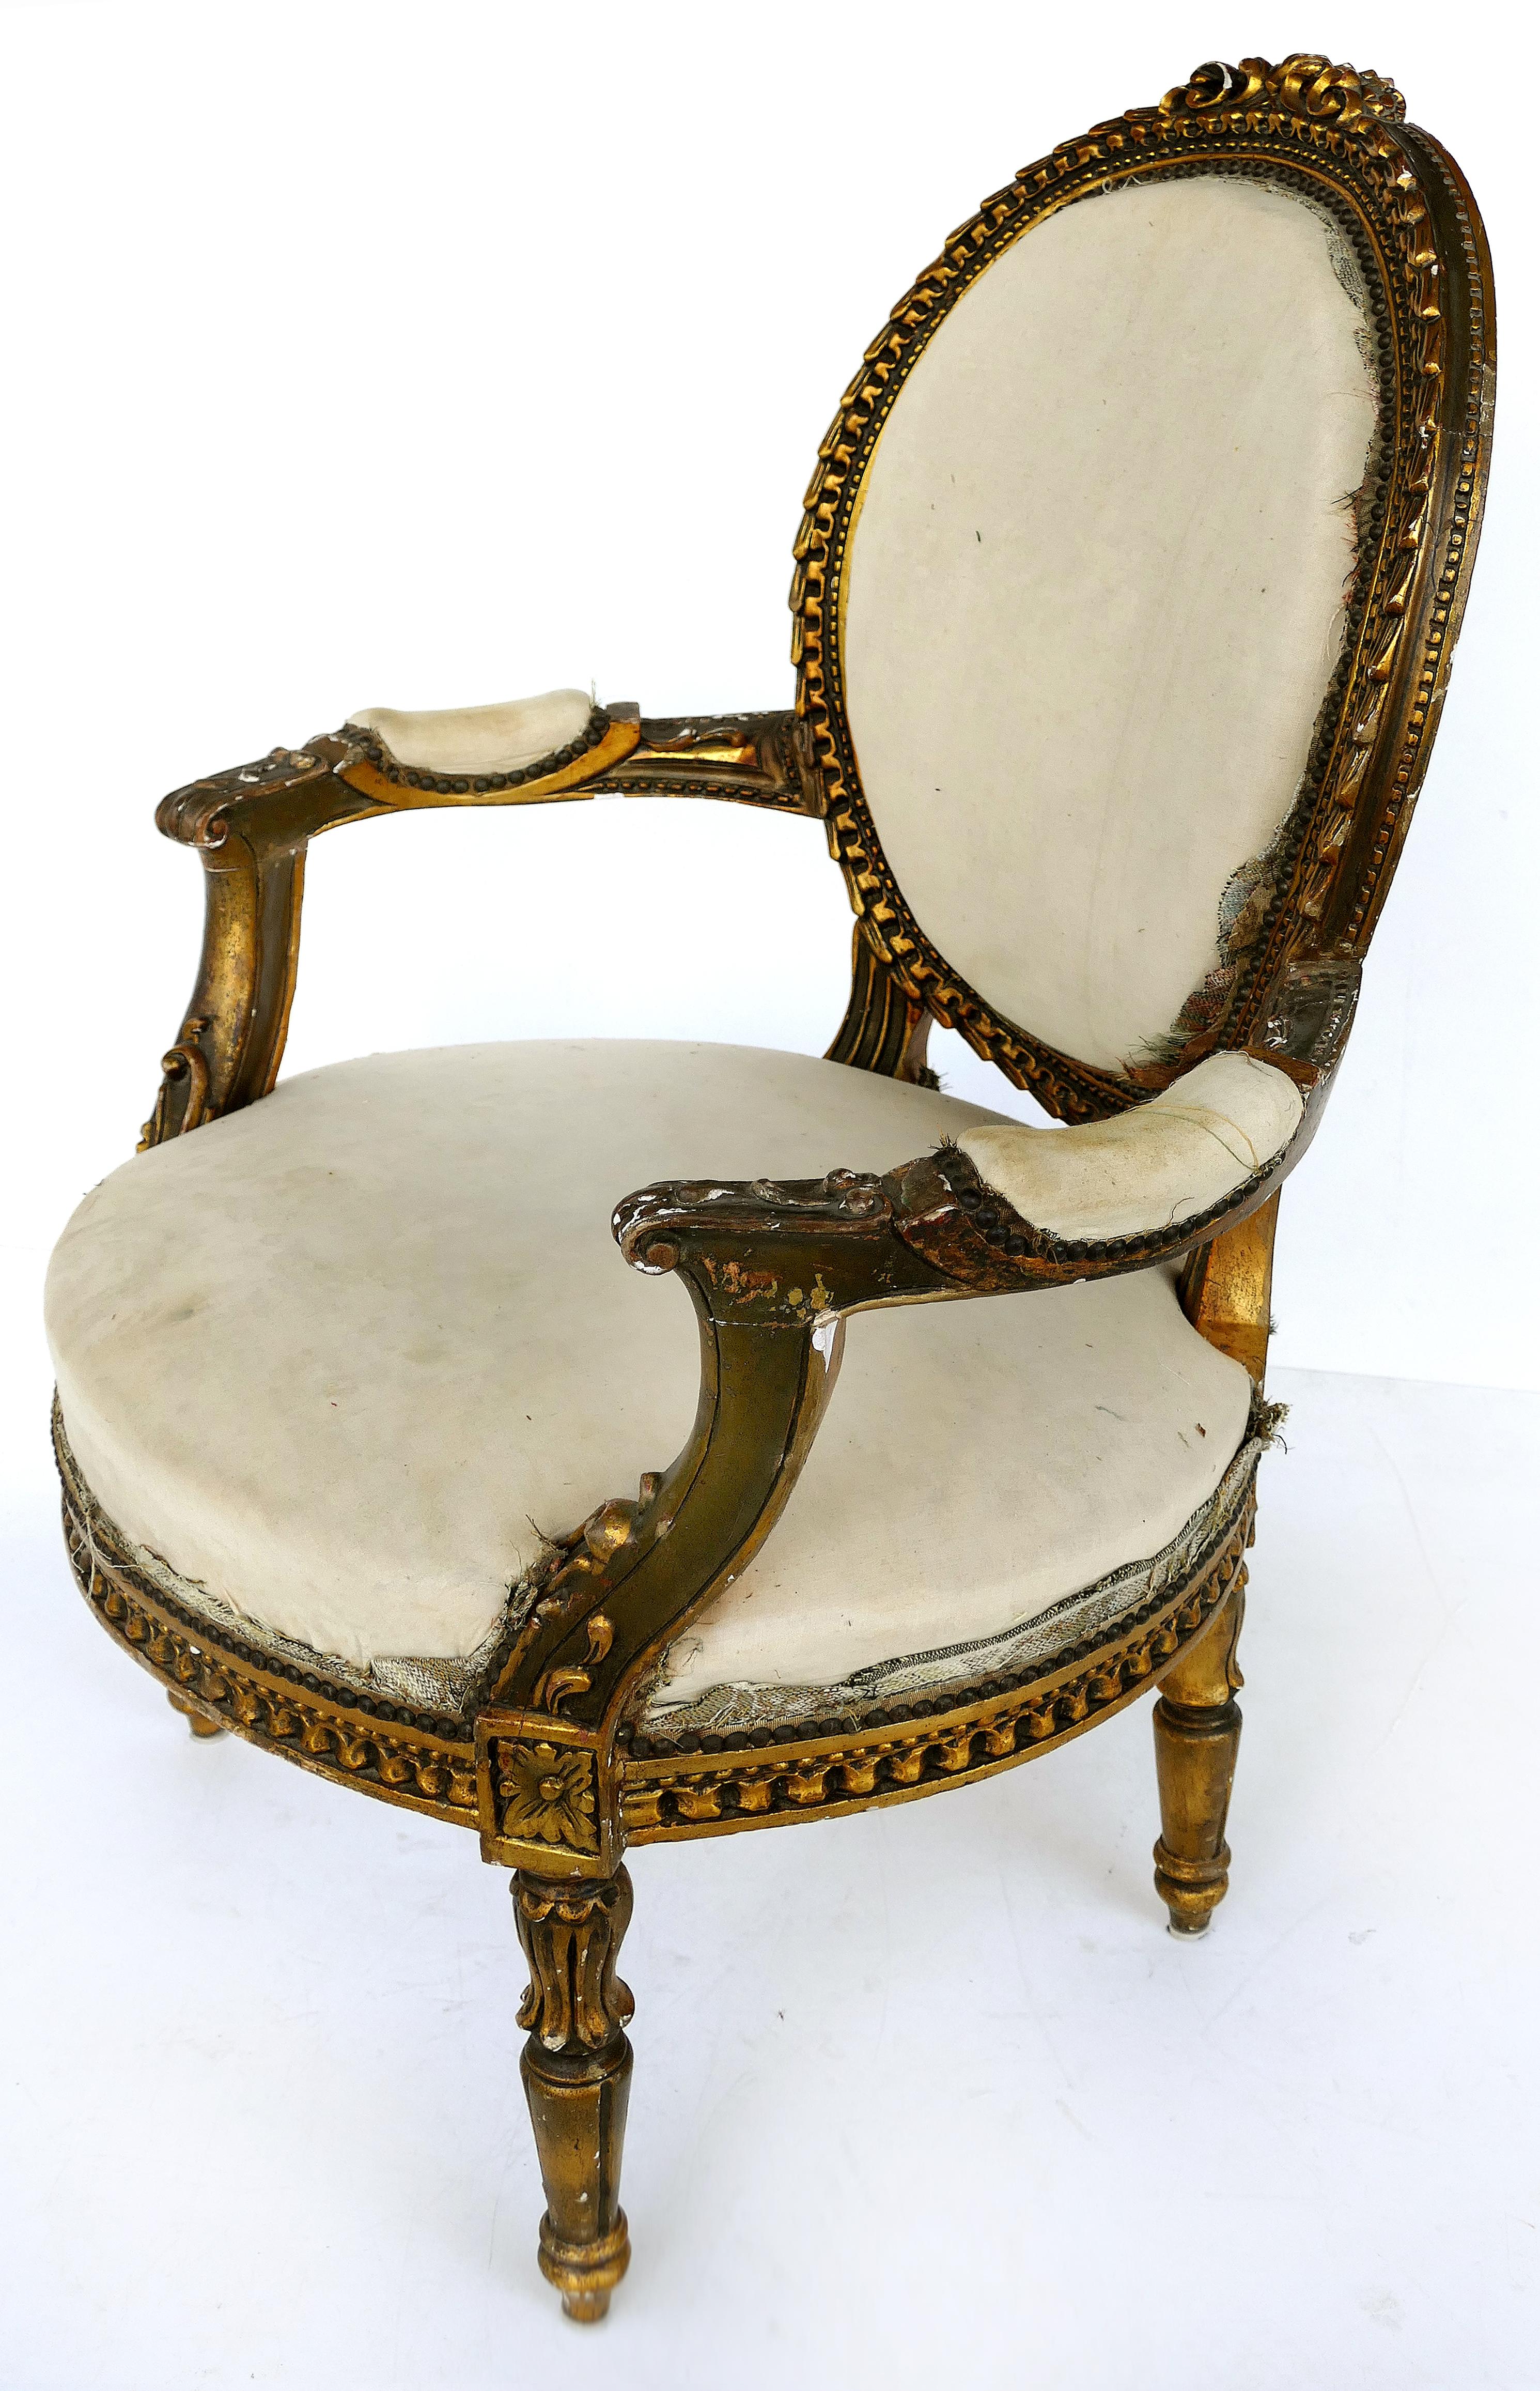 paire de fauteuils fauteuil en bois doré français du XIXe siècle

Nous proposons à la vente une paire de fauteuils en bois doré de style Louis XVI de la fin du 19ème siècle, montrés en mousseline et nécessitant un rembourrage. Les chaises présentent